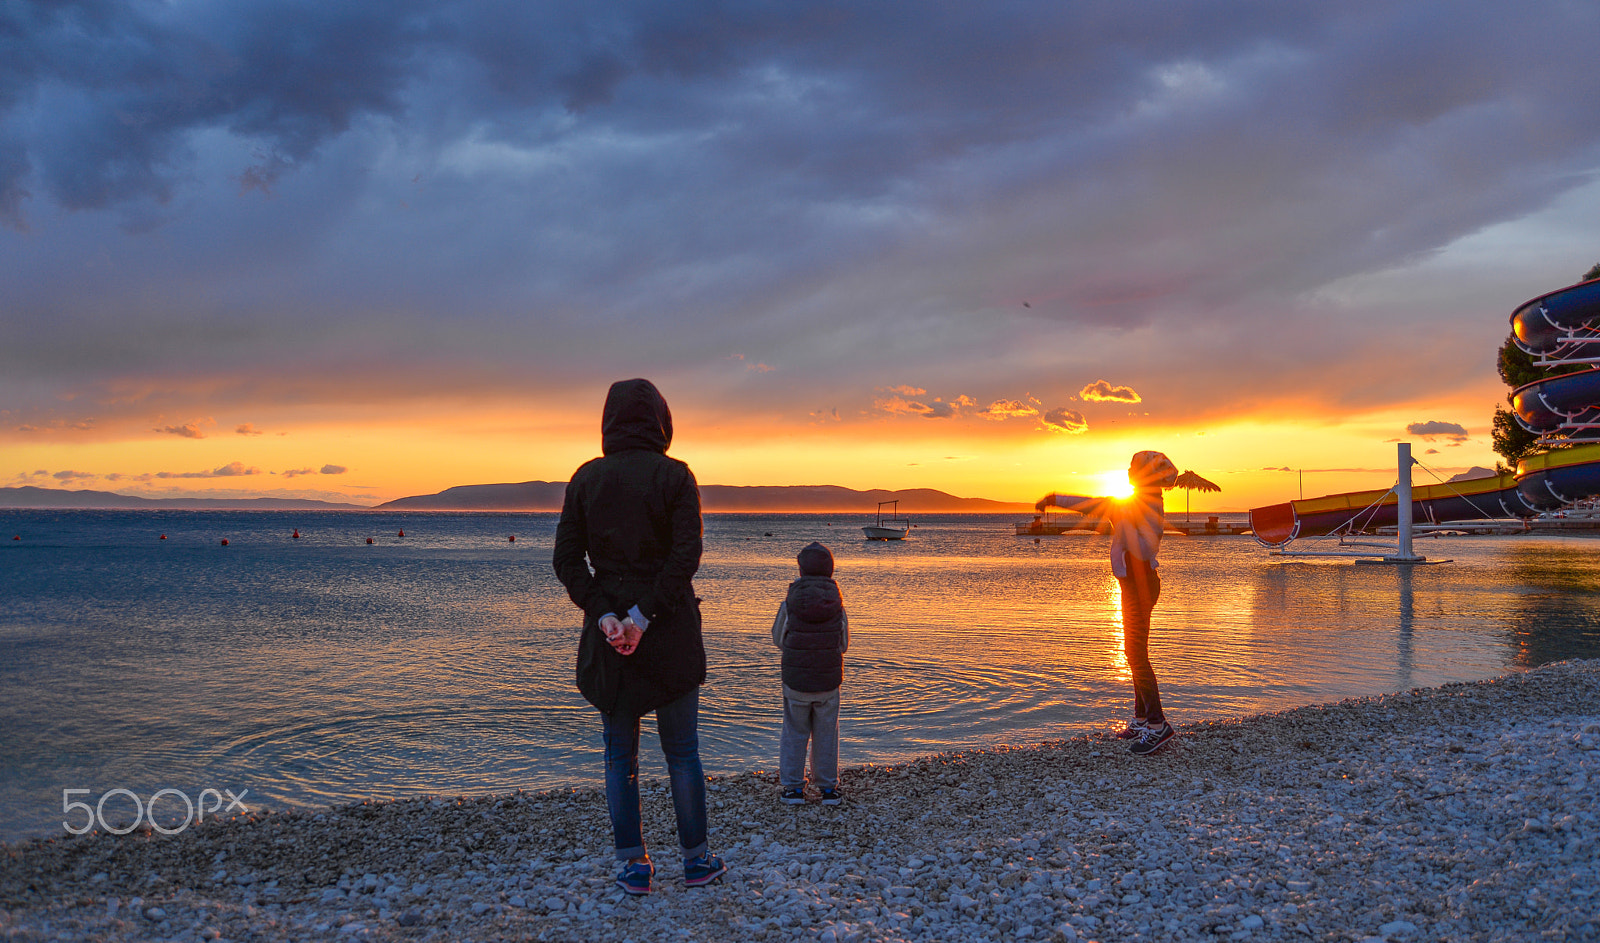 Nikon D610 + AF Zoom-Nikkor 28-70mm f/3.5-4.5D sample photo. Makarska beach sunset photography